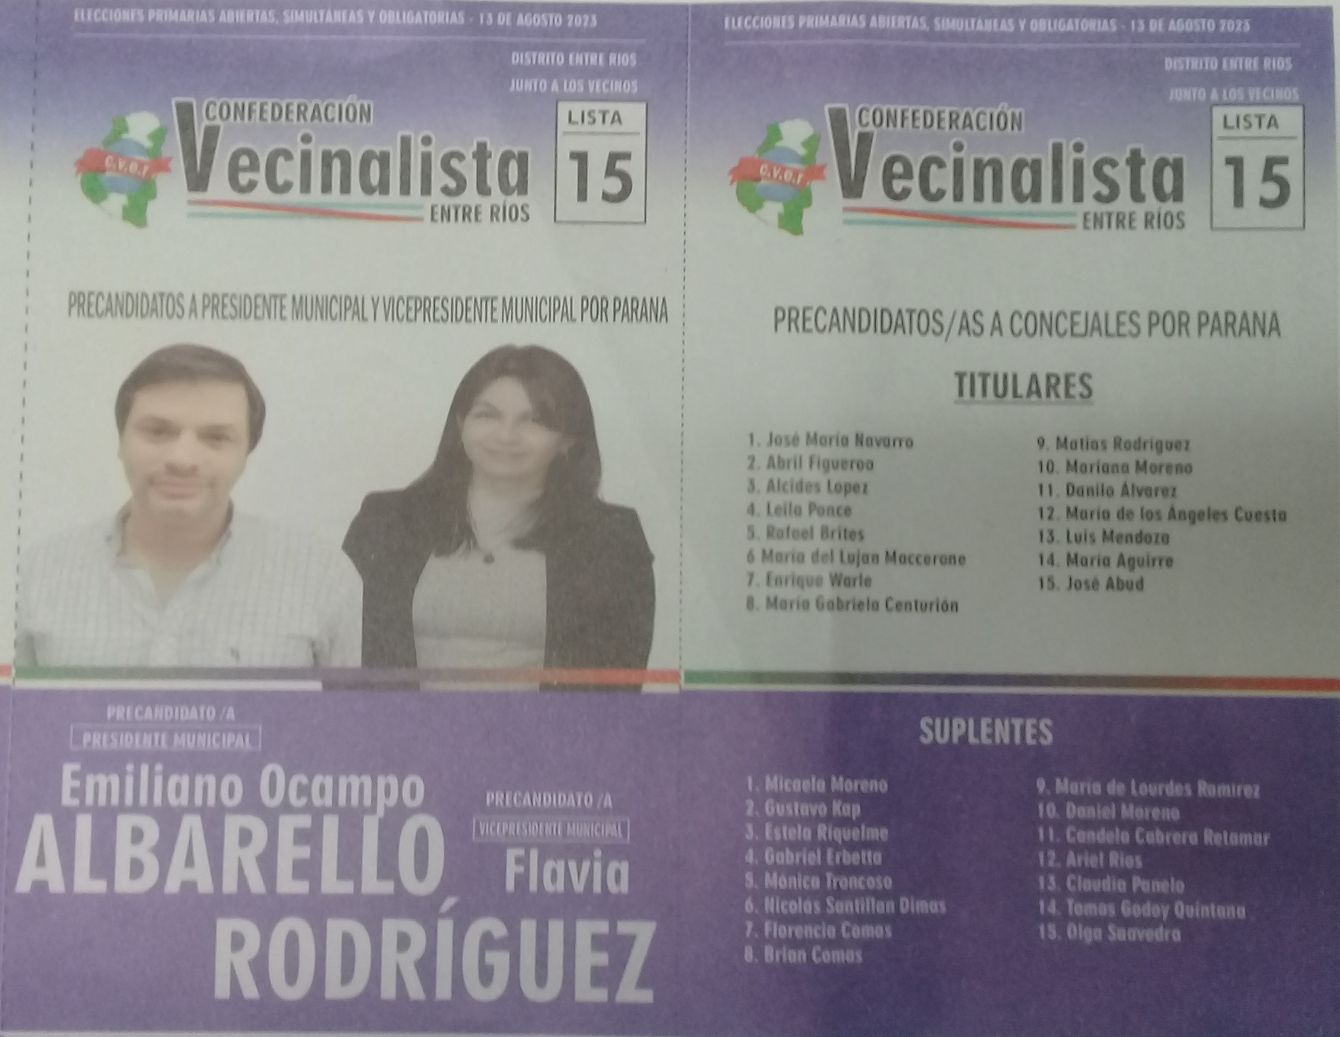 Lista 15: Confederación Vecinalista Entre Ríos - Emiliano Ocampo Albarello.